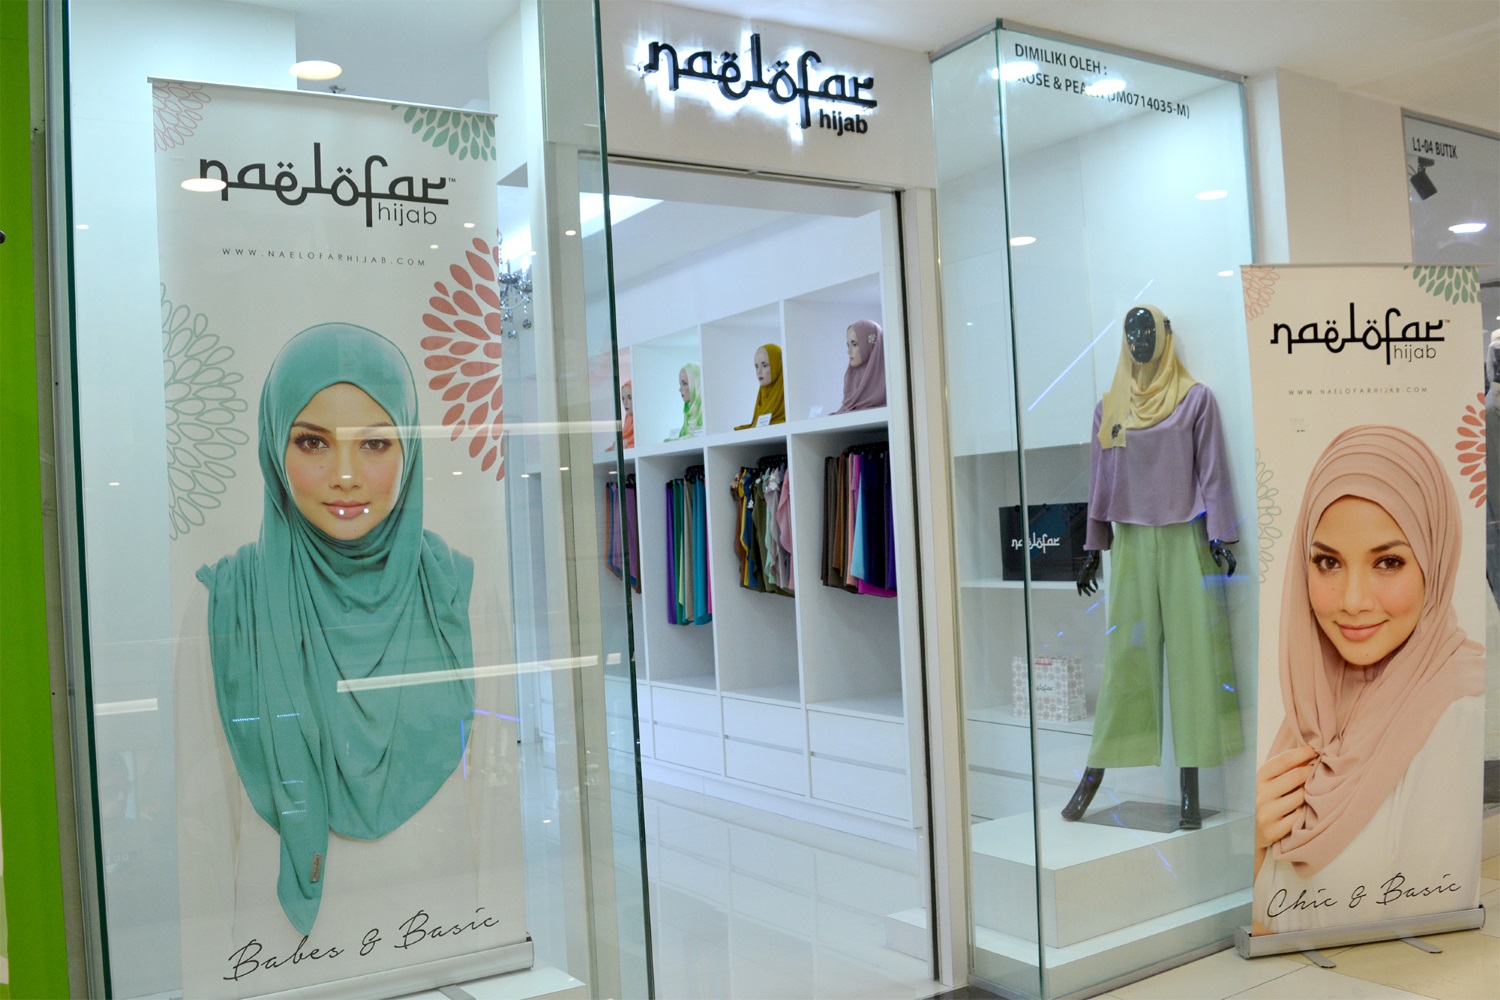 Naelofar Hijab